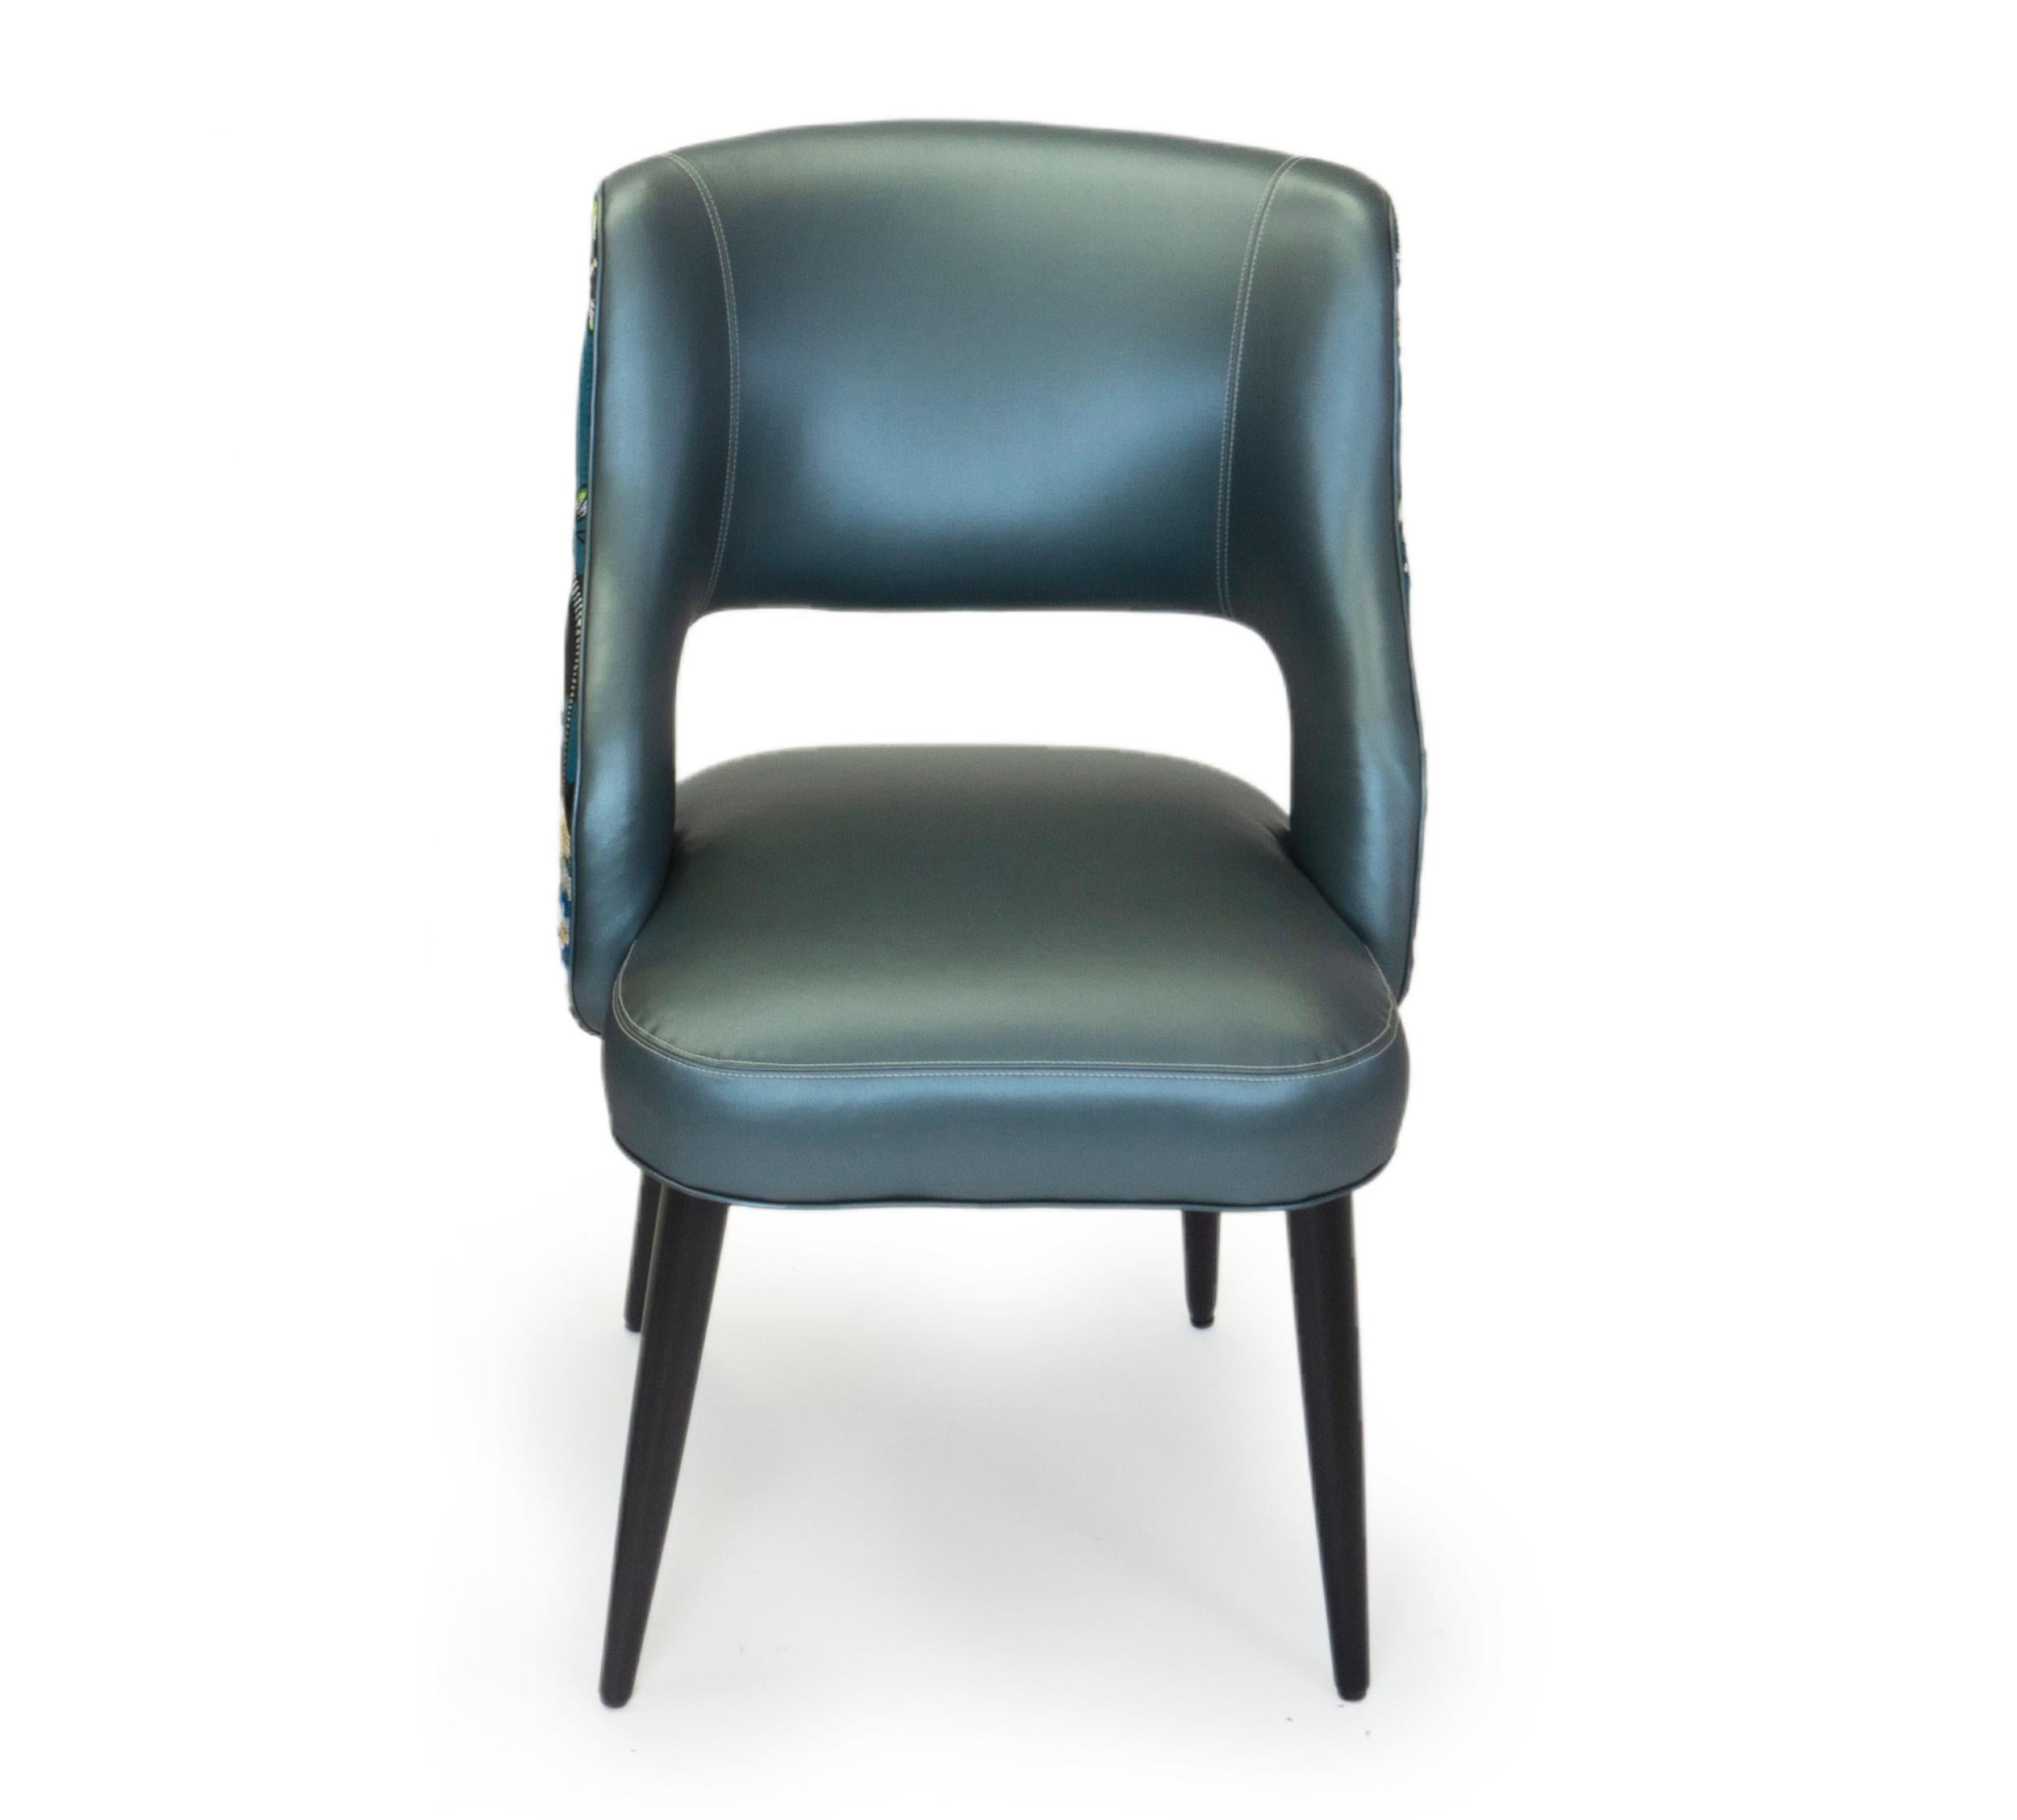 Dieses neue Design für Esszimmerstühle ist bequem und modern und hat eine entspannte Neigung. Die abgebildeten Stühle sind in Walnussholz ausgeführt und mit blauem Vinyl bezogen. Die Rückseite besteht aus einem Christian Lacroix-Stoff mit einem